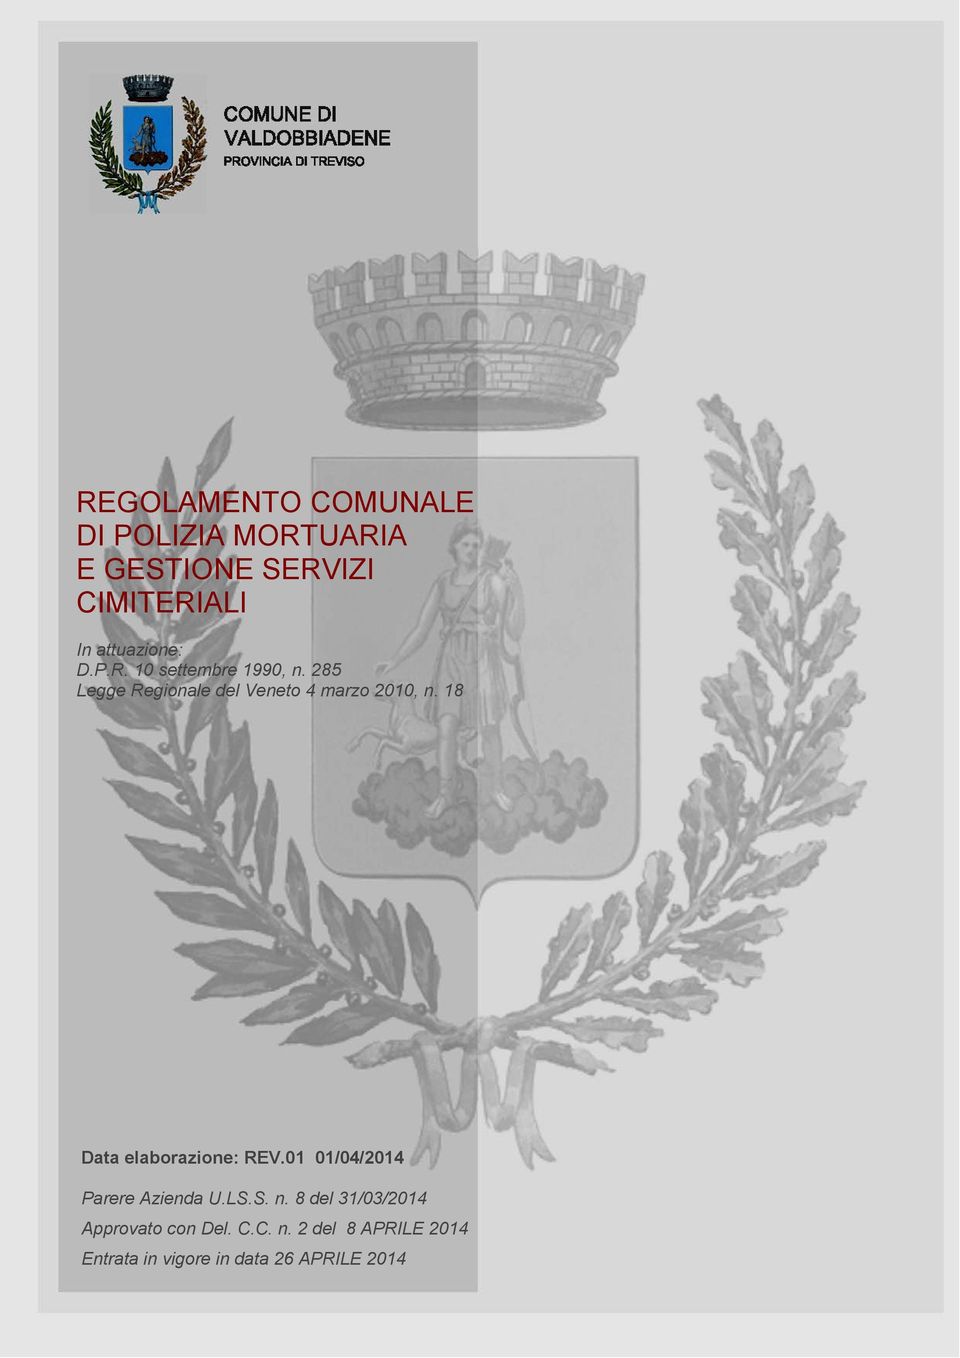 285 Legge Regionale del Veneto 4 marzo 2010, n. 18 Data elaborazione: REV.